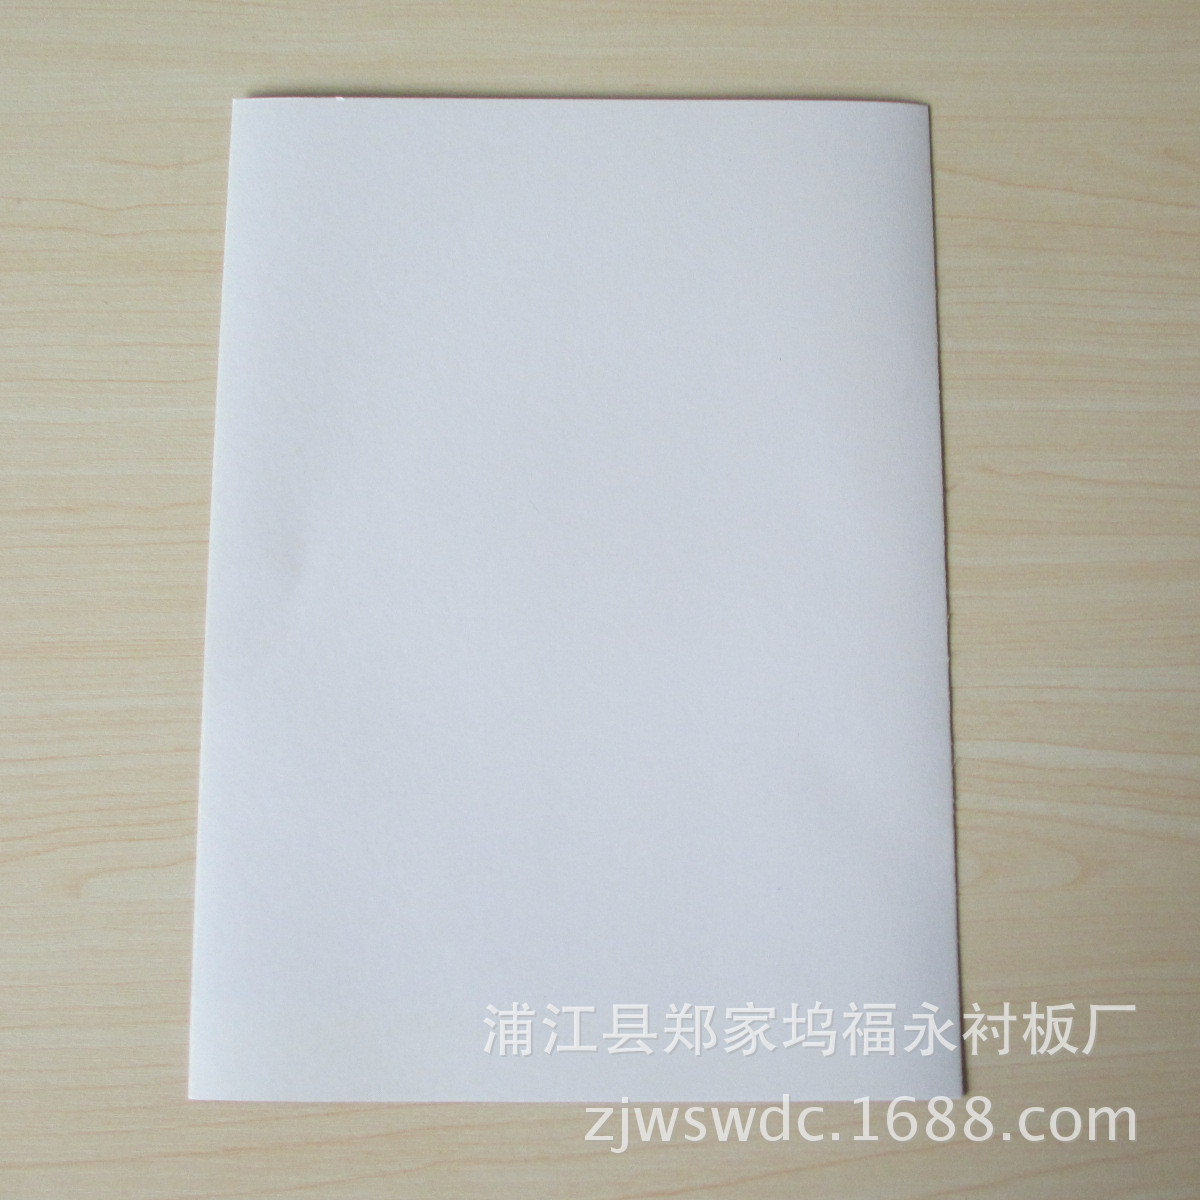 专业生产 400g涂布白板纸 开片涂布白板纸 质量保证